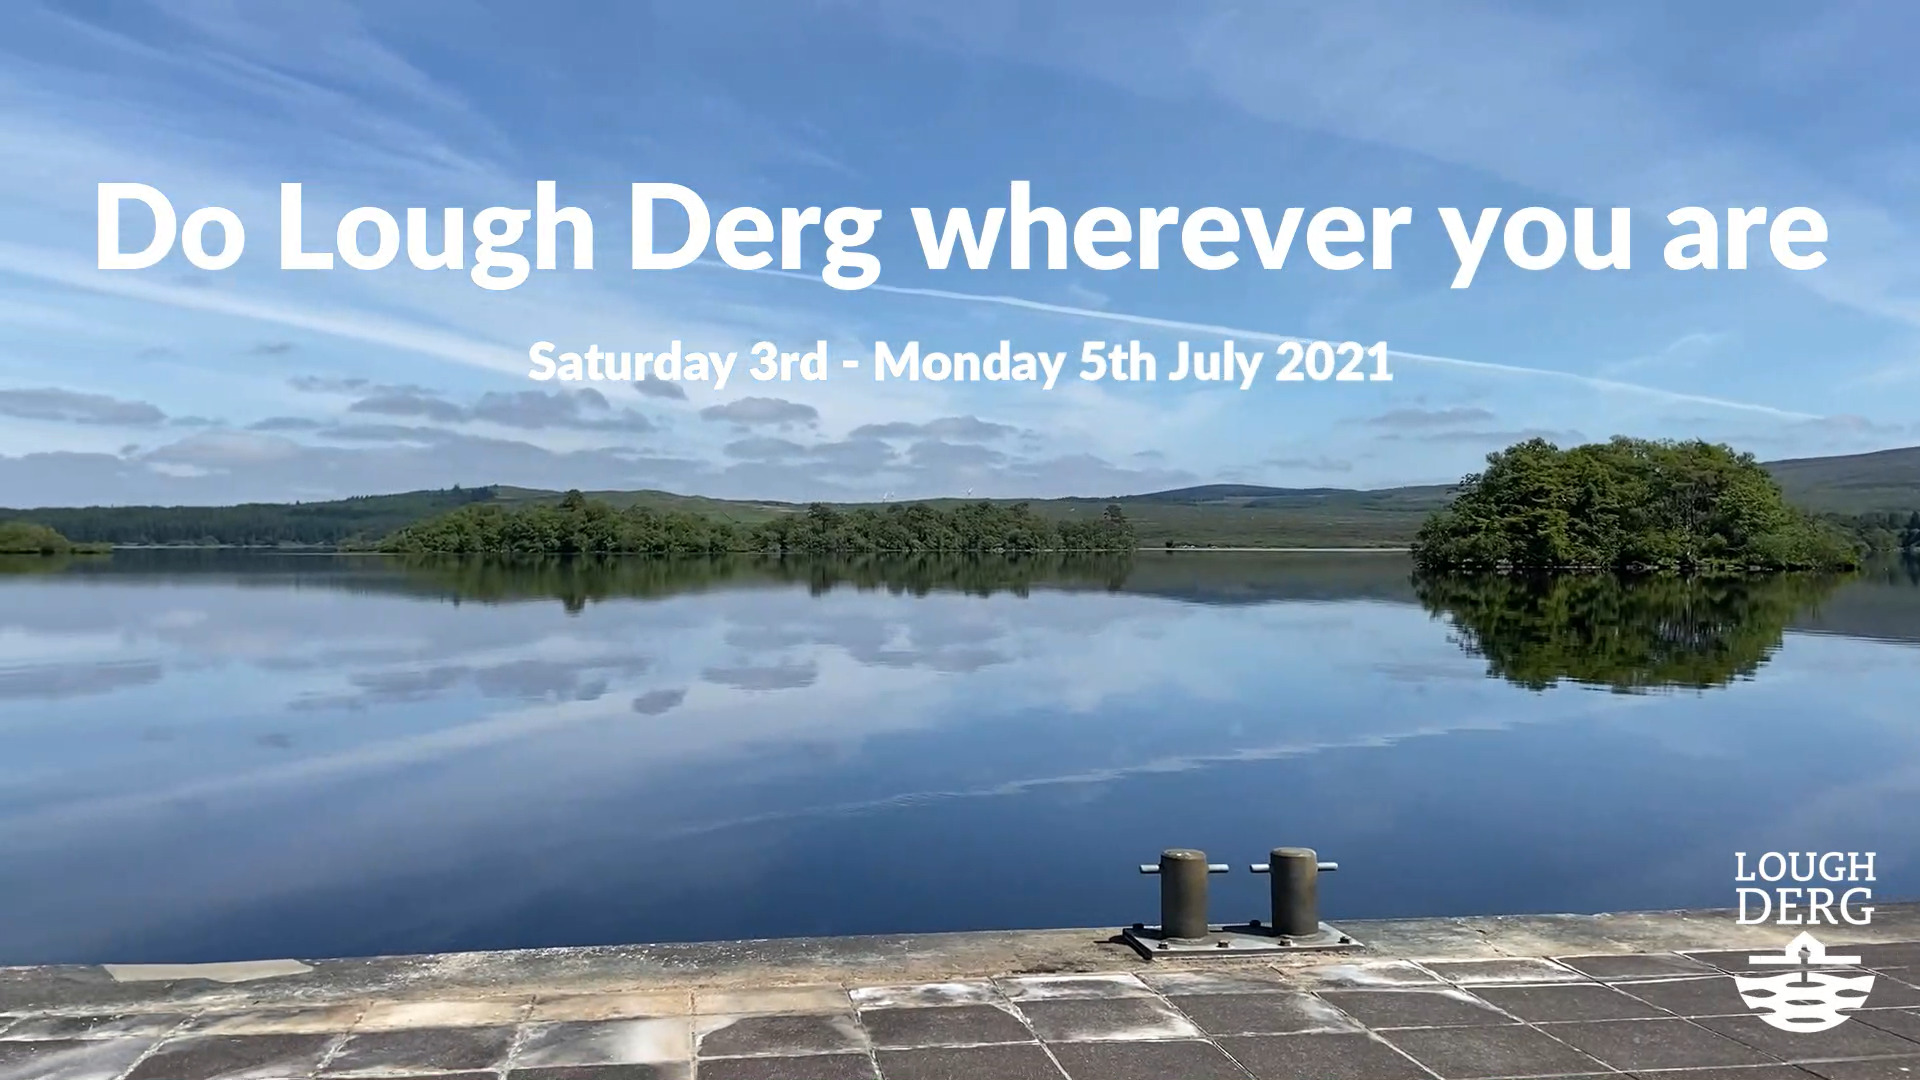 Do Lough Derg pilgrimage wherever you are